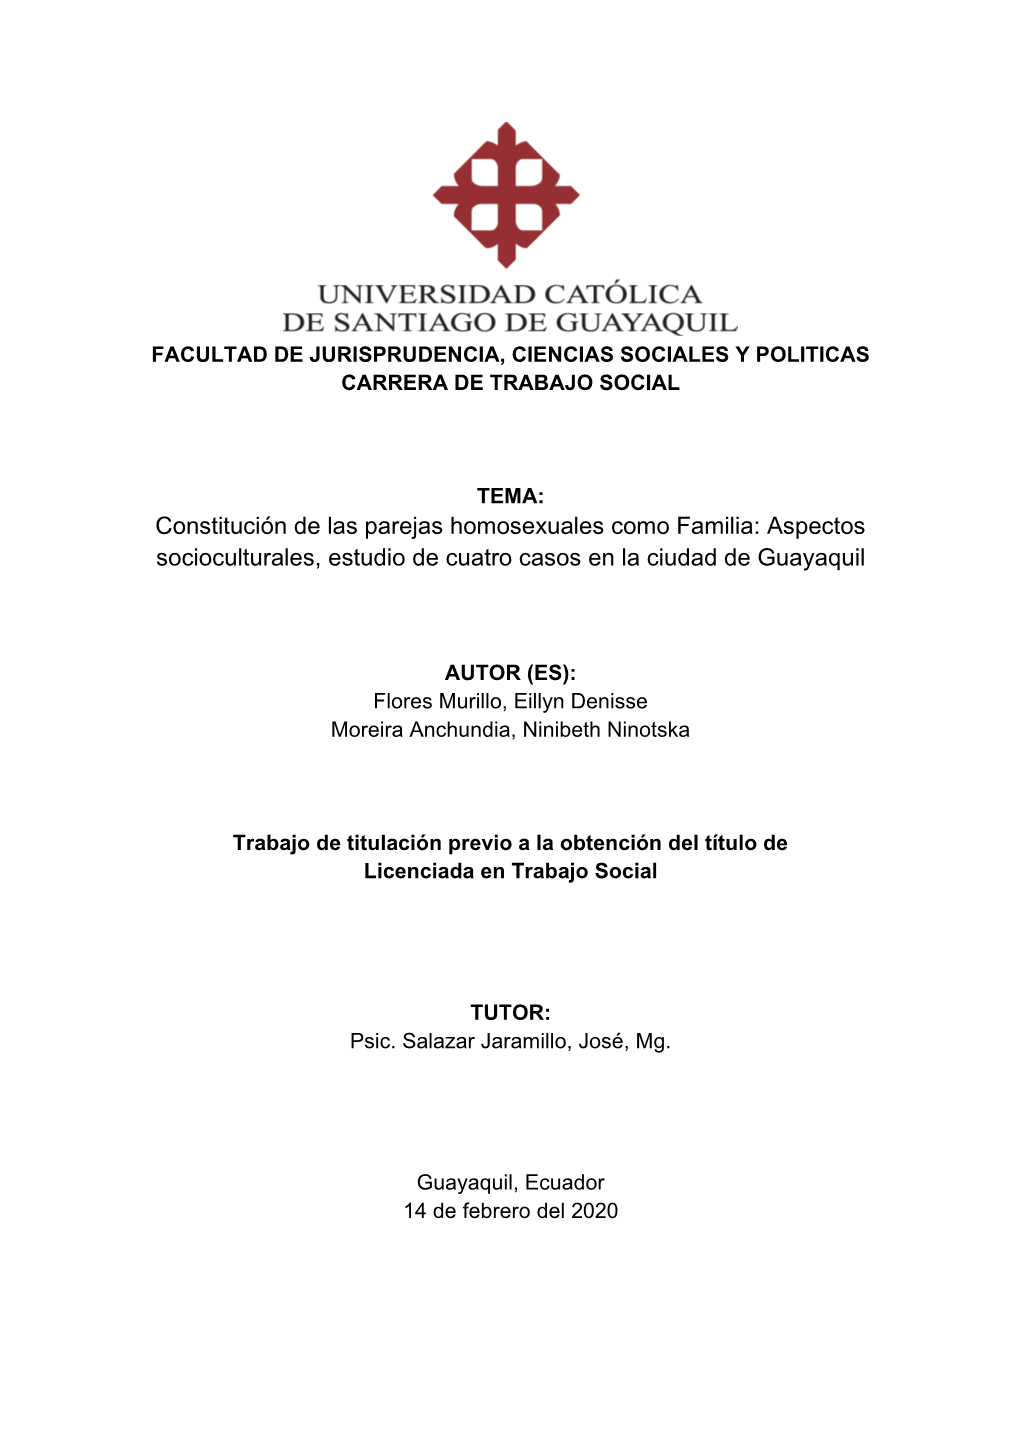 Constitución De Las Parejas Homosexuales Como Familia: Aspectos Socioculturales, Estudio De Cuatro Casos En La Ciudad De Guayaquil